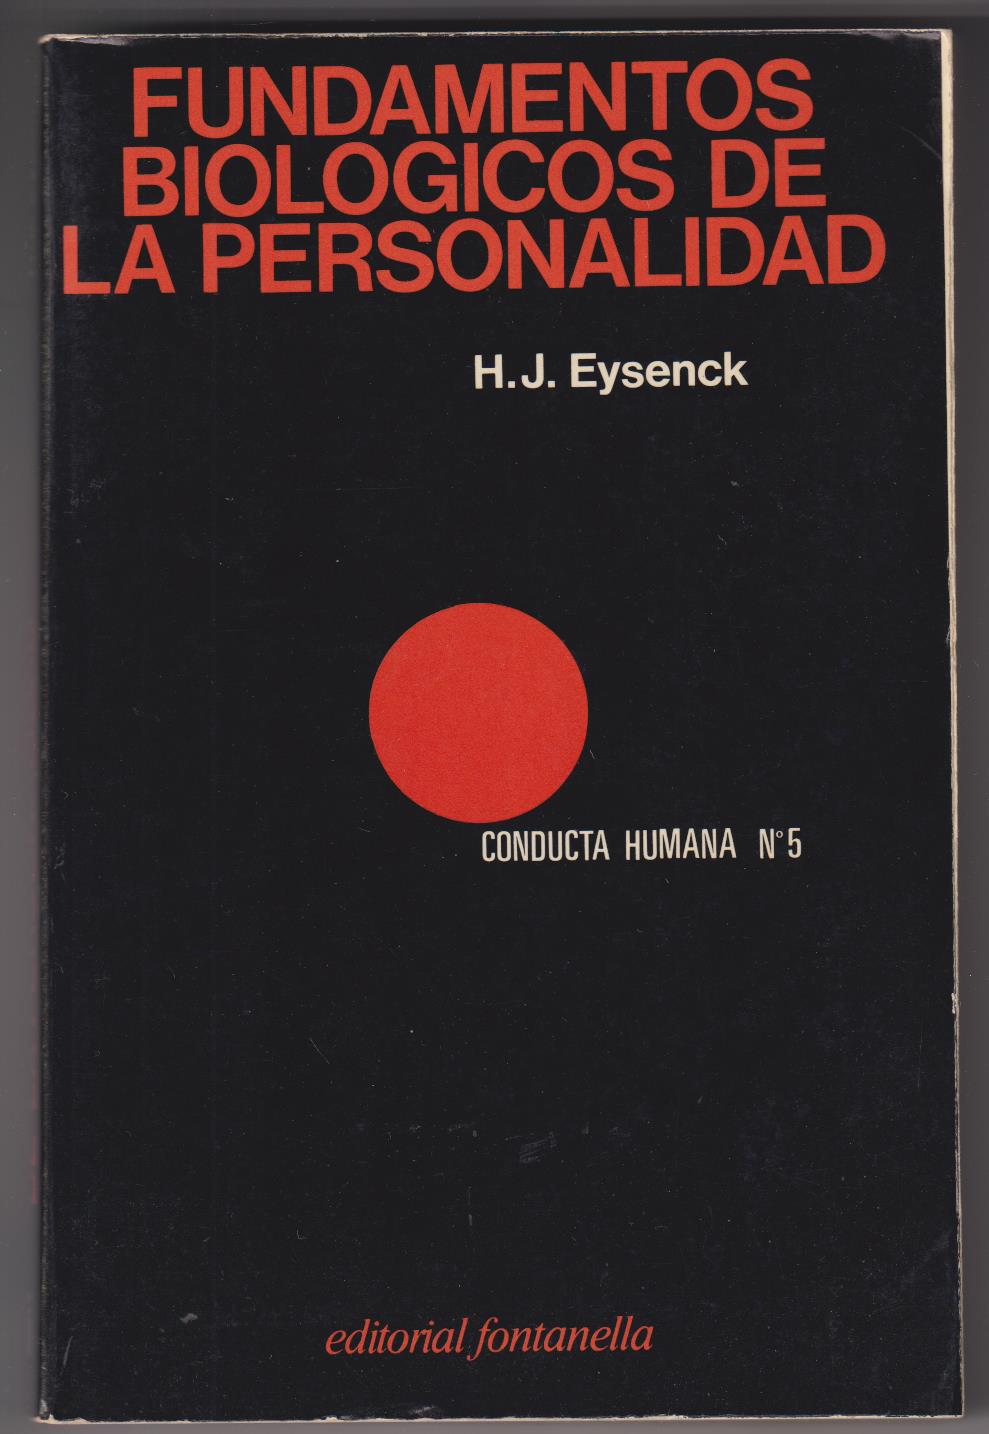 H. J. Eysenck. Fundamentos Biológicos de la personalidad. Editorial Fontanella 1978